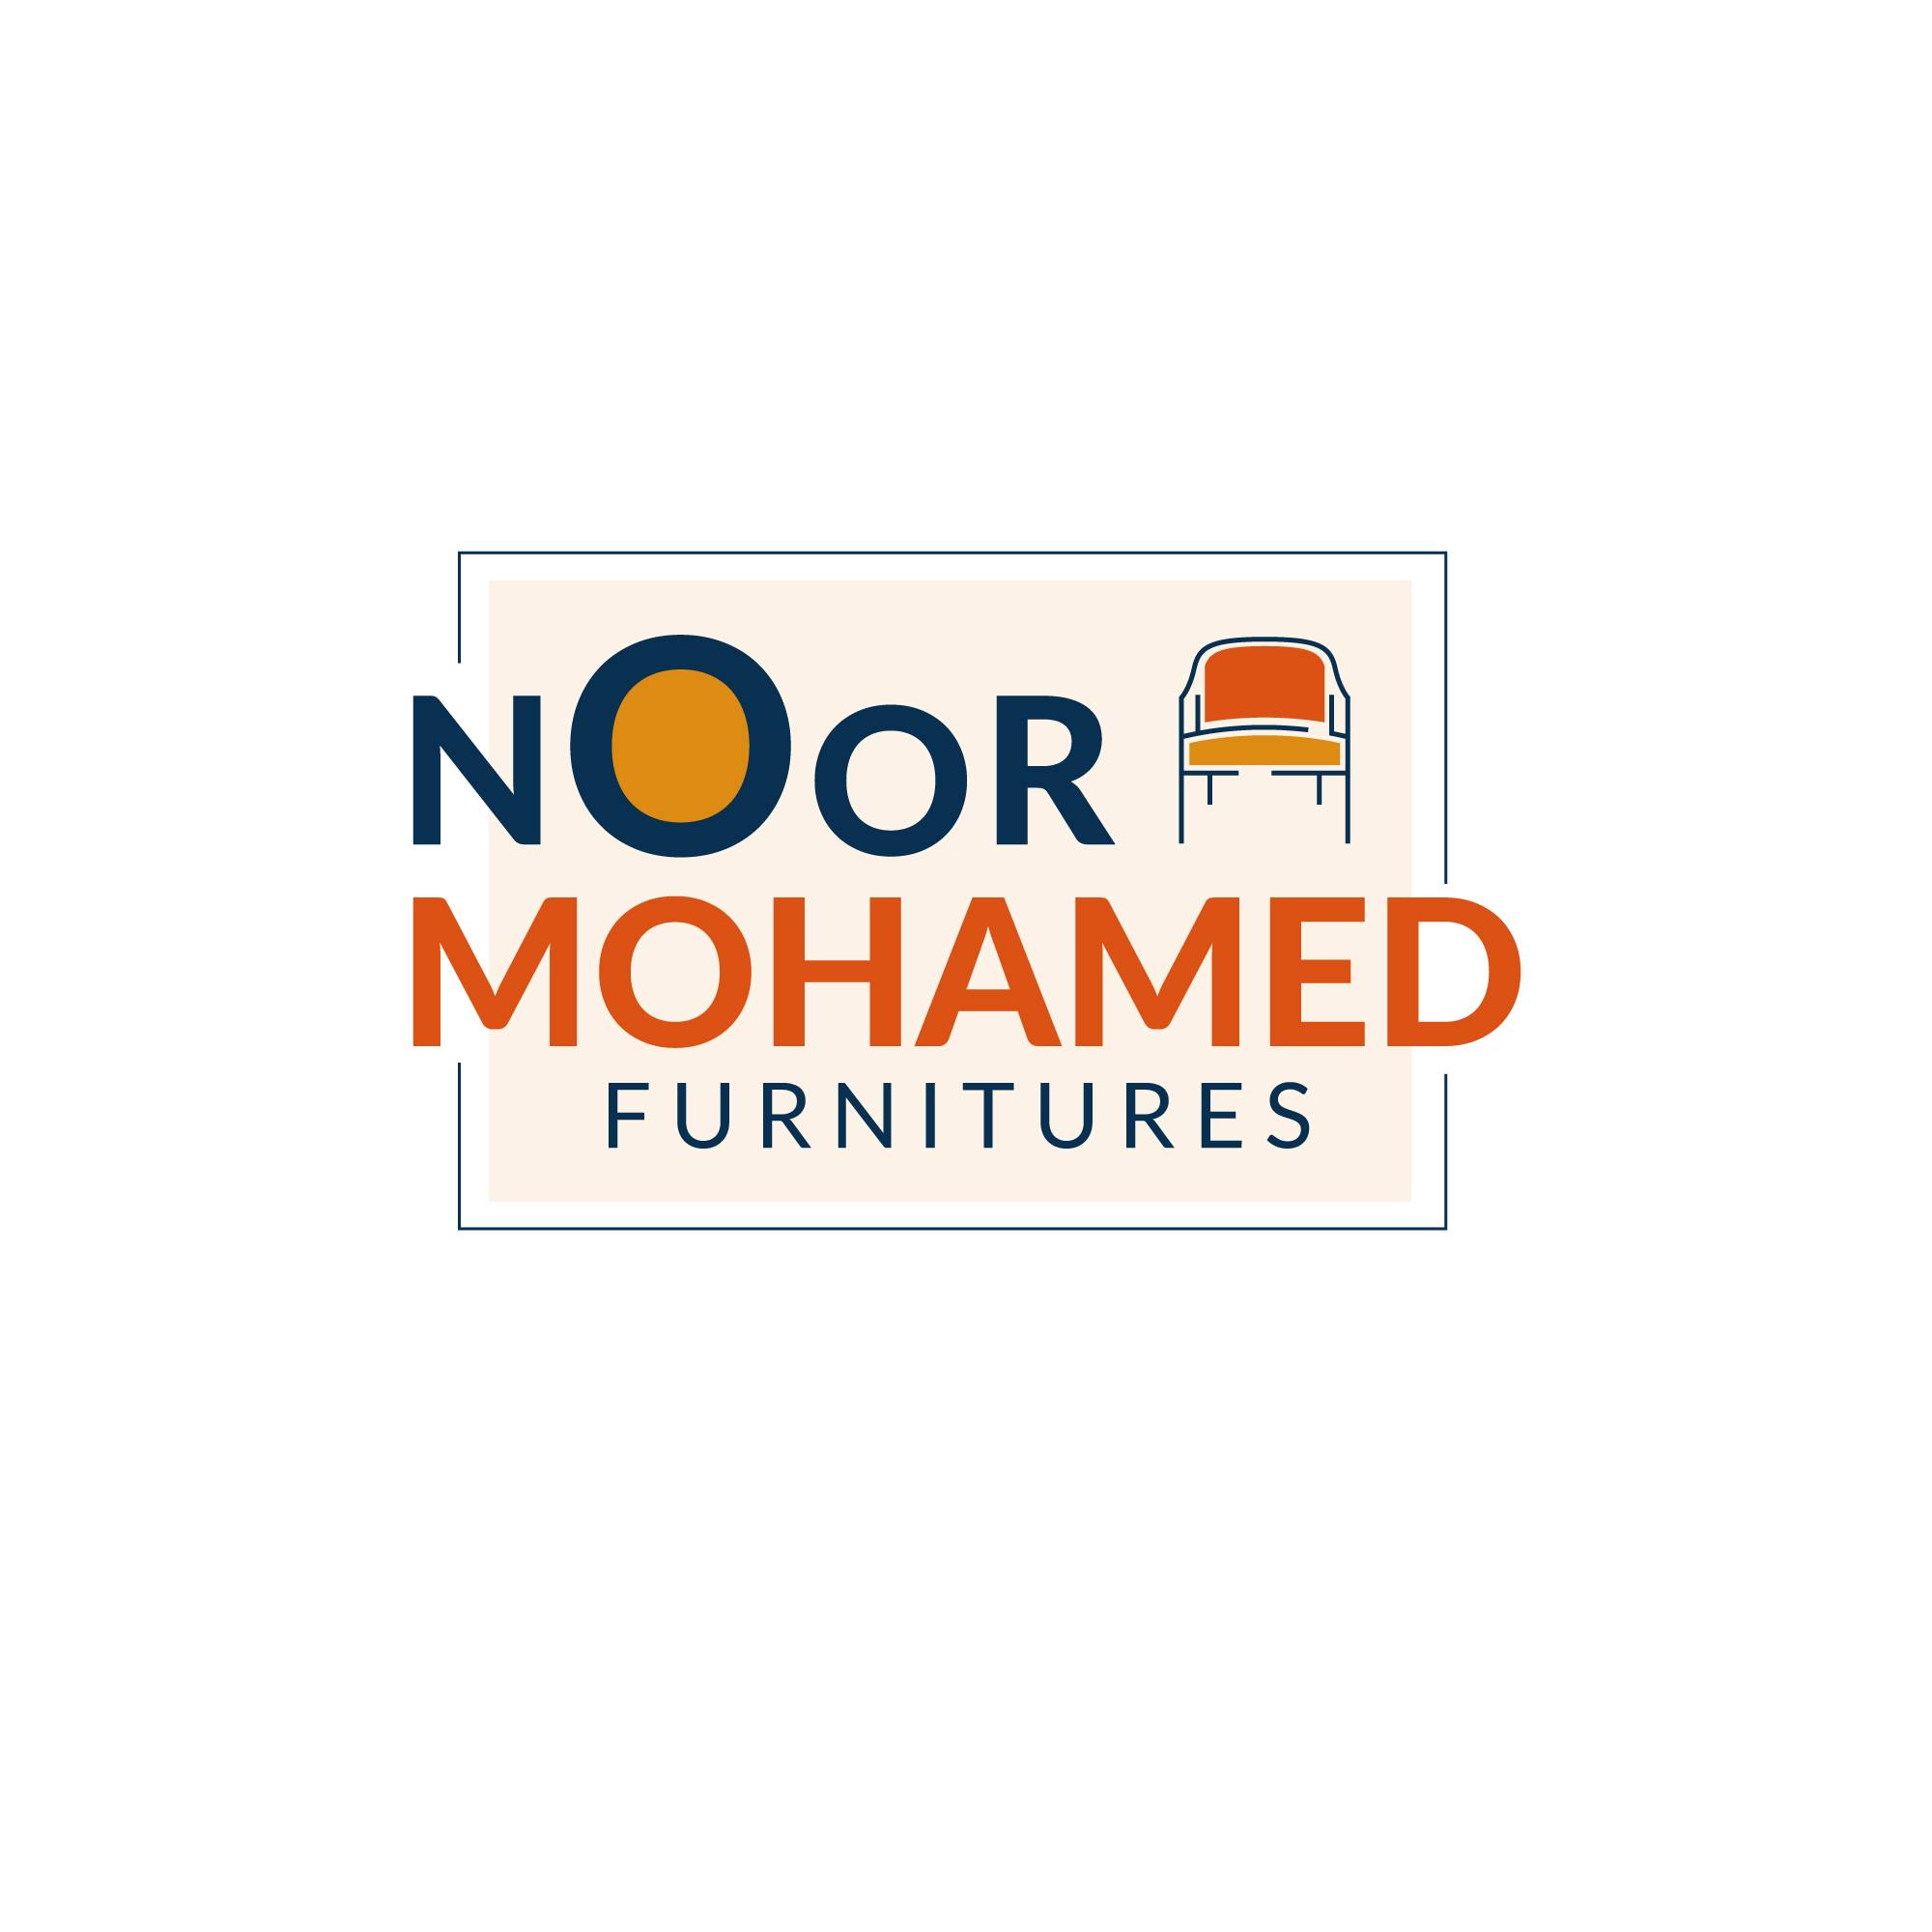 Noor Mohamed